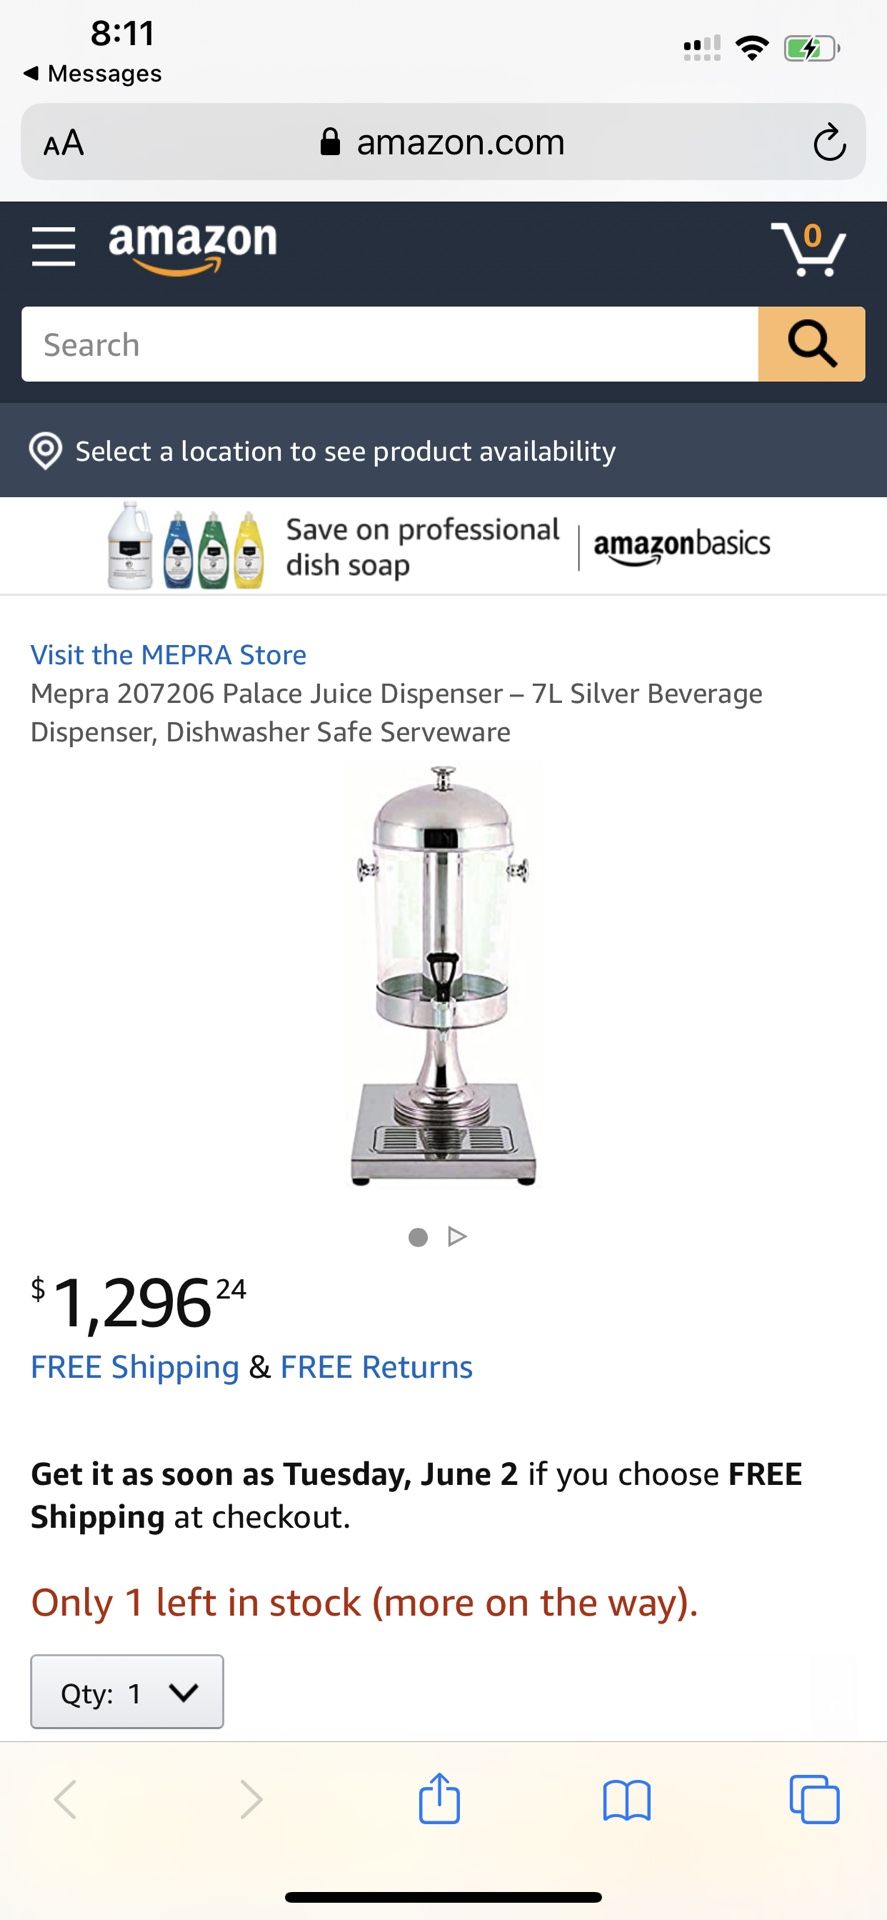 Mepra 207206 Palace Juice Dispenser – 7L Silver Beverage Dispenser, Dishwasher Safe Serveware